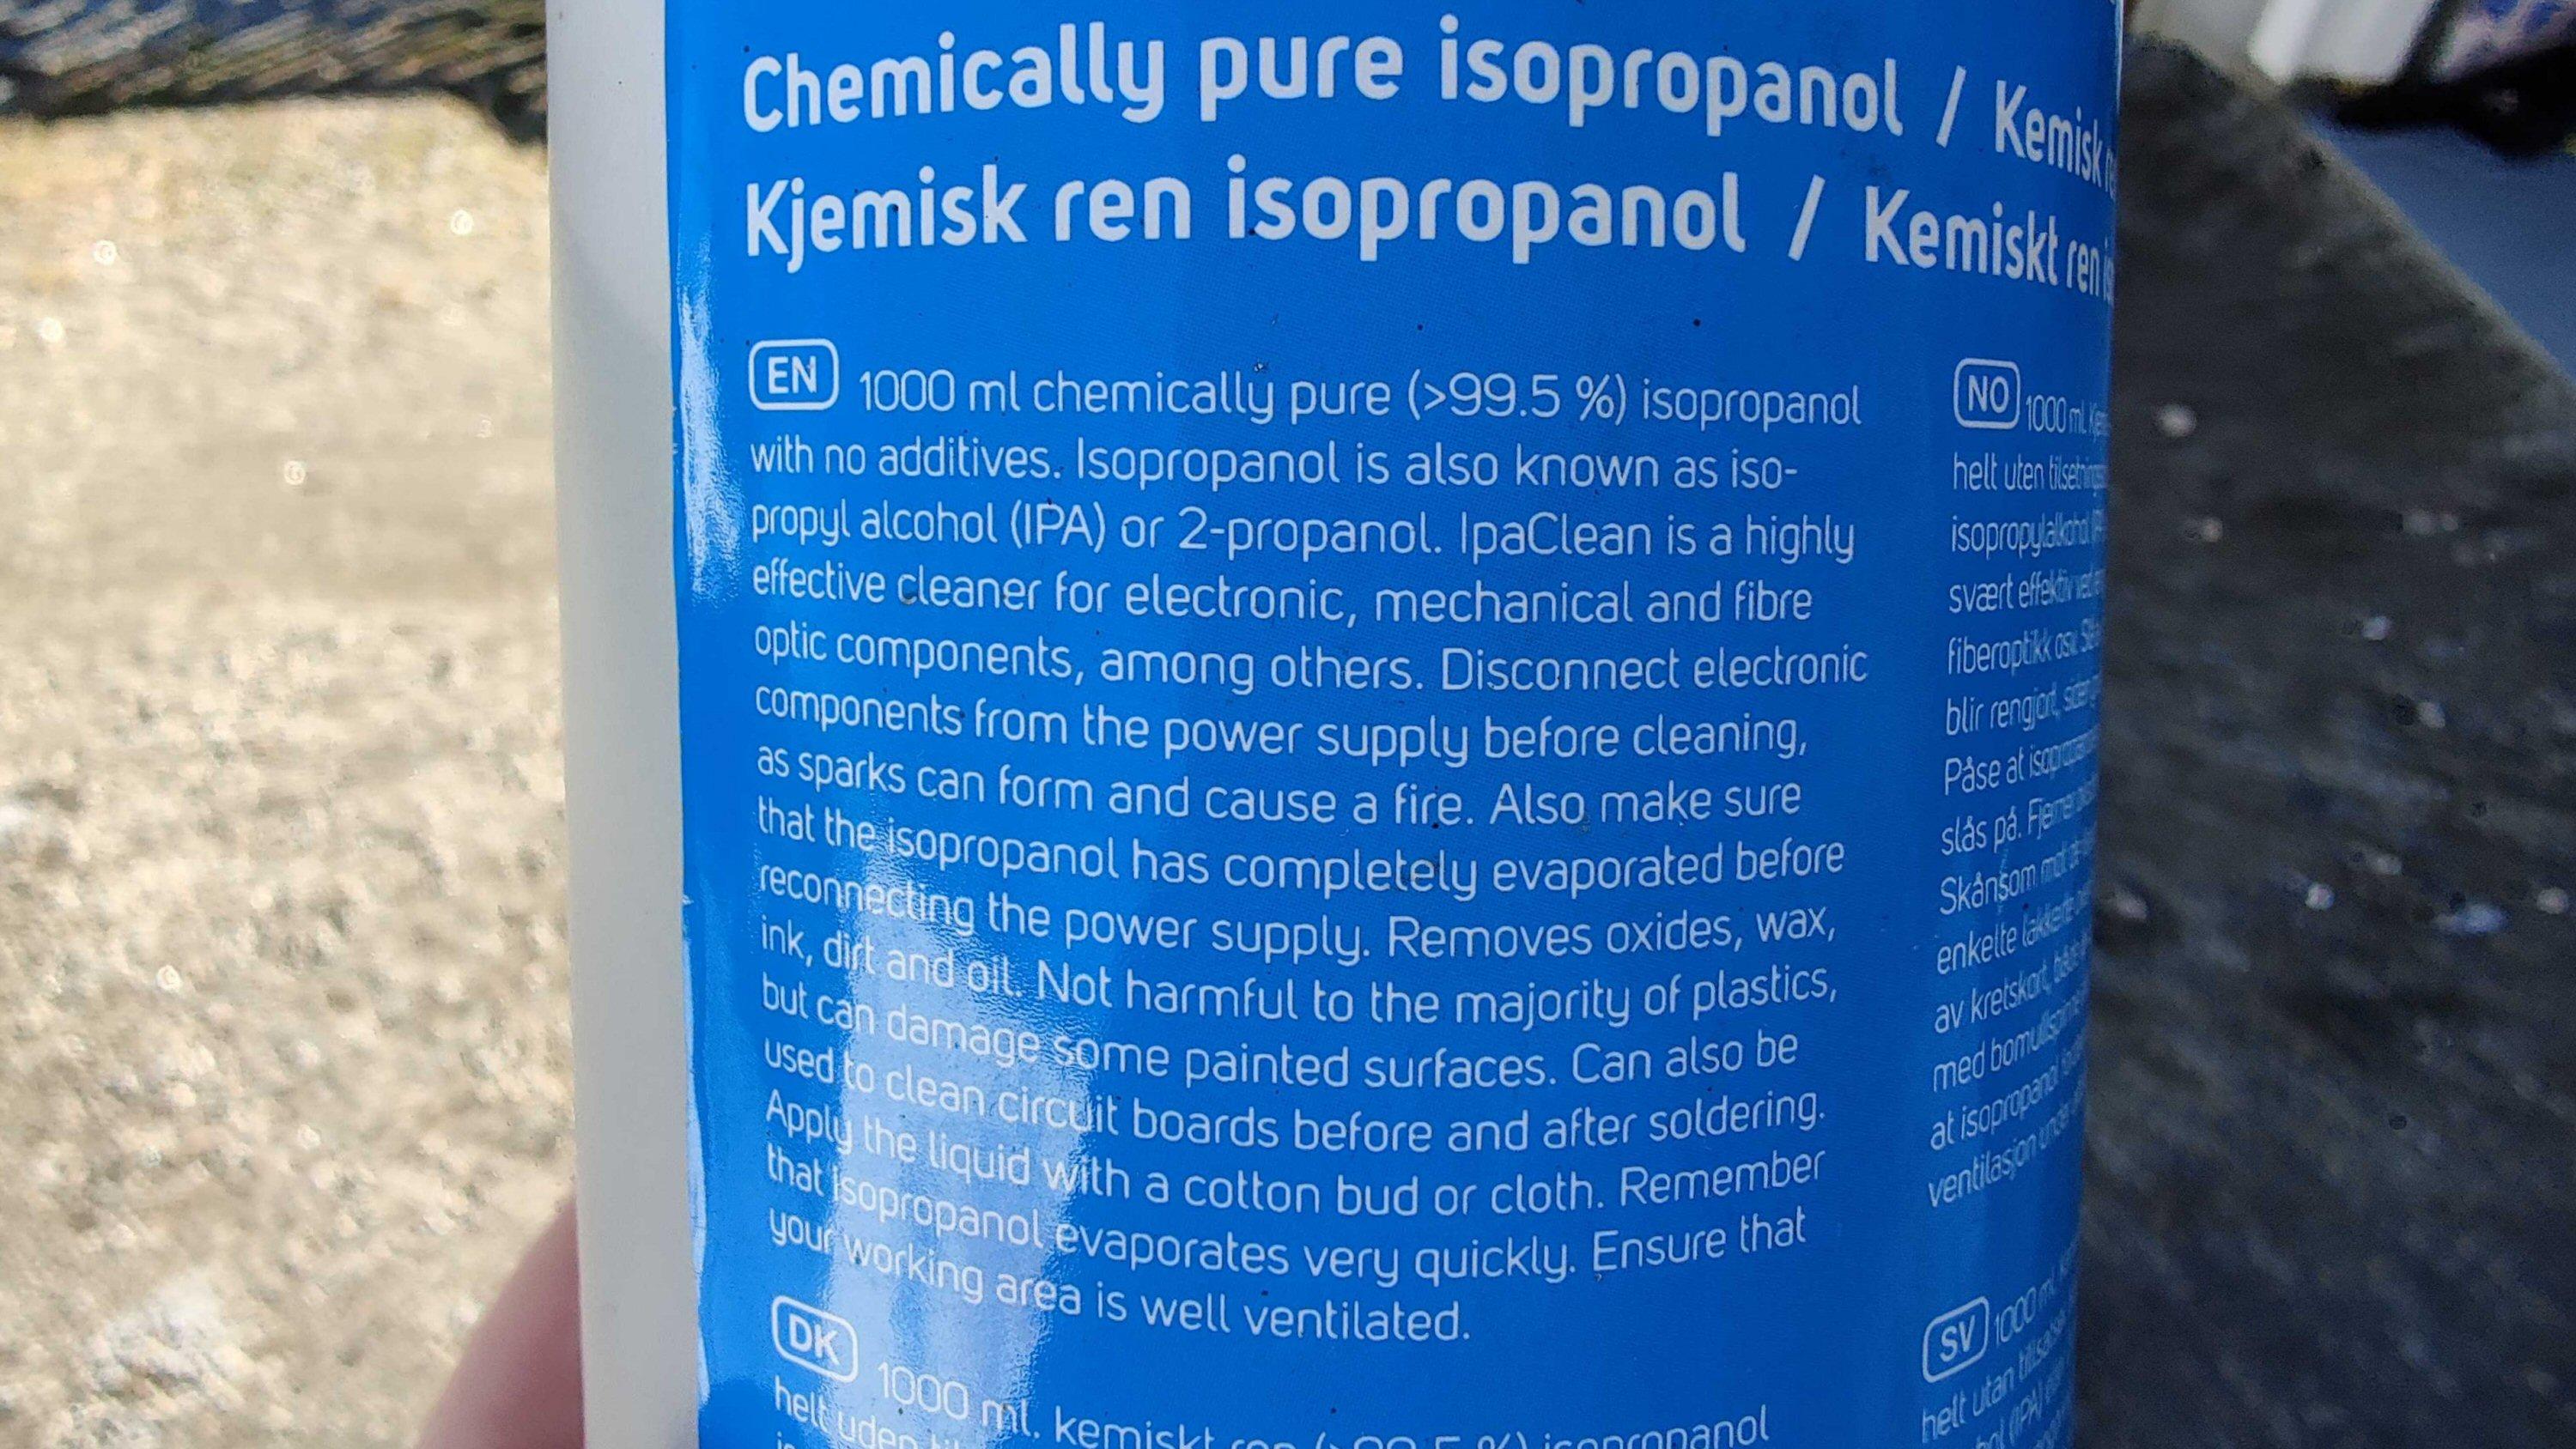 Det er ikke uvanlig å finne en litersflaske med isopropanol i velfylte garasjer. Hvis den er helt ren (99,5 %), er det mulig å blande den ut med destillert vann (batterivann).